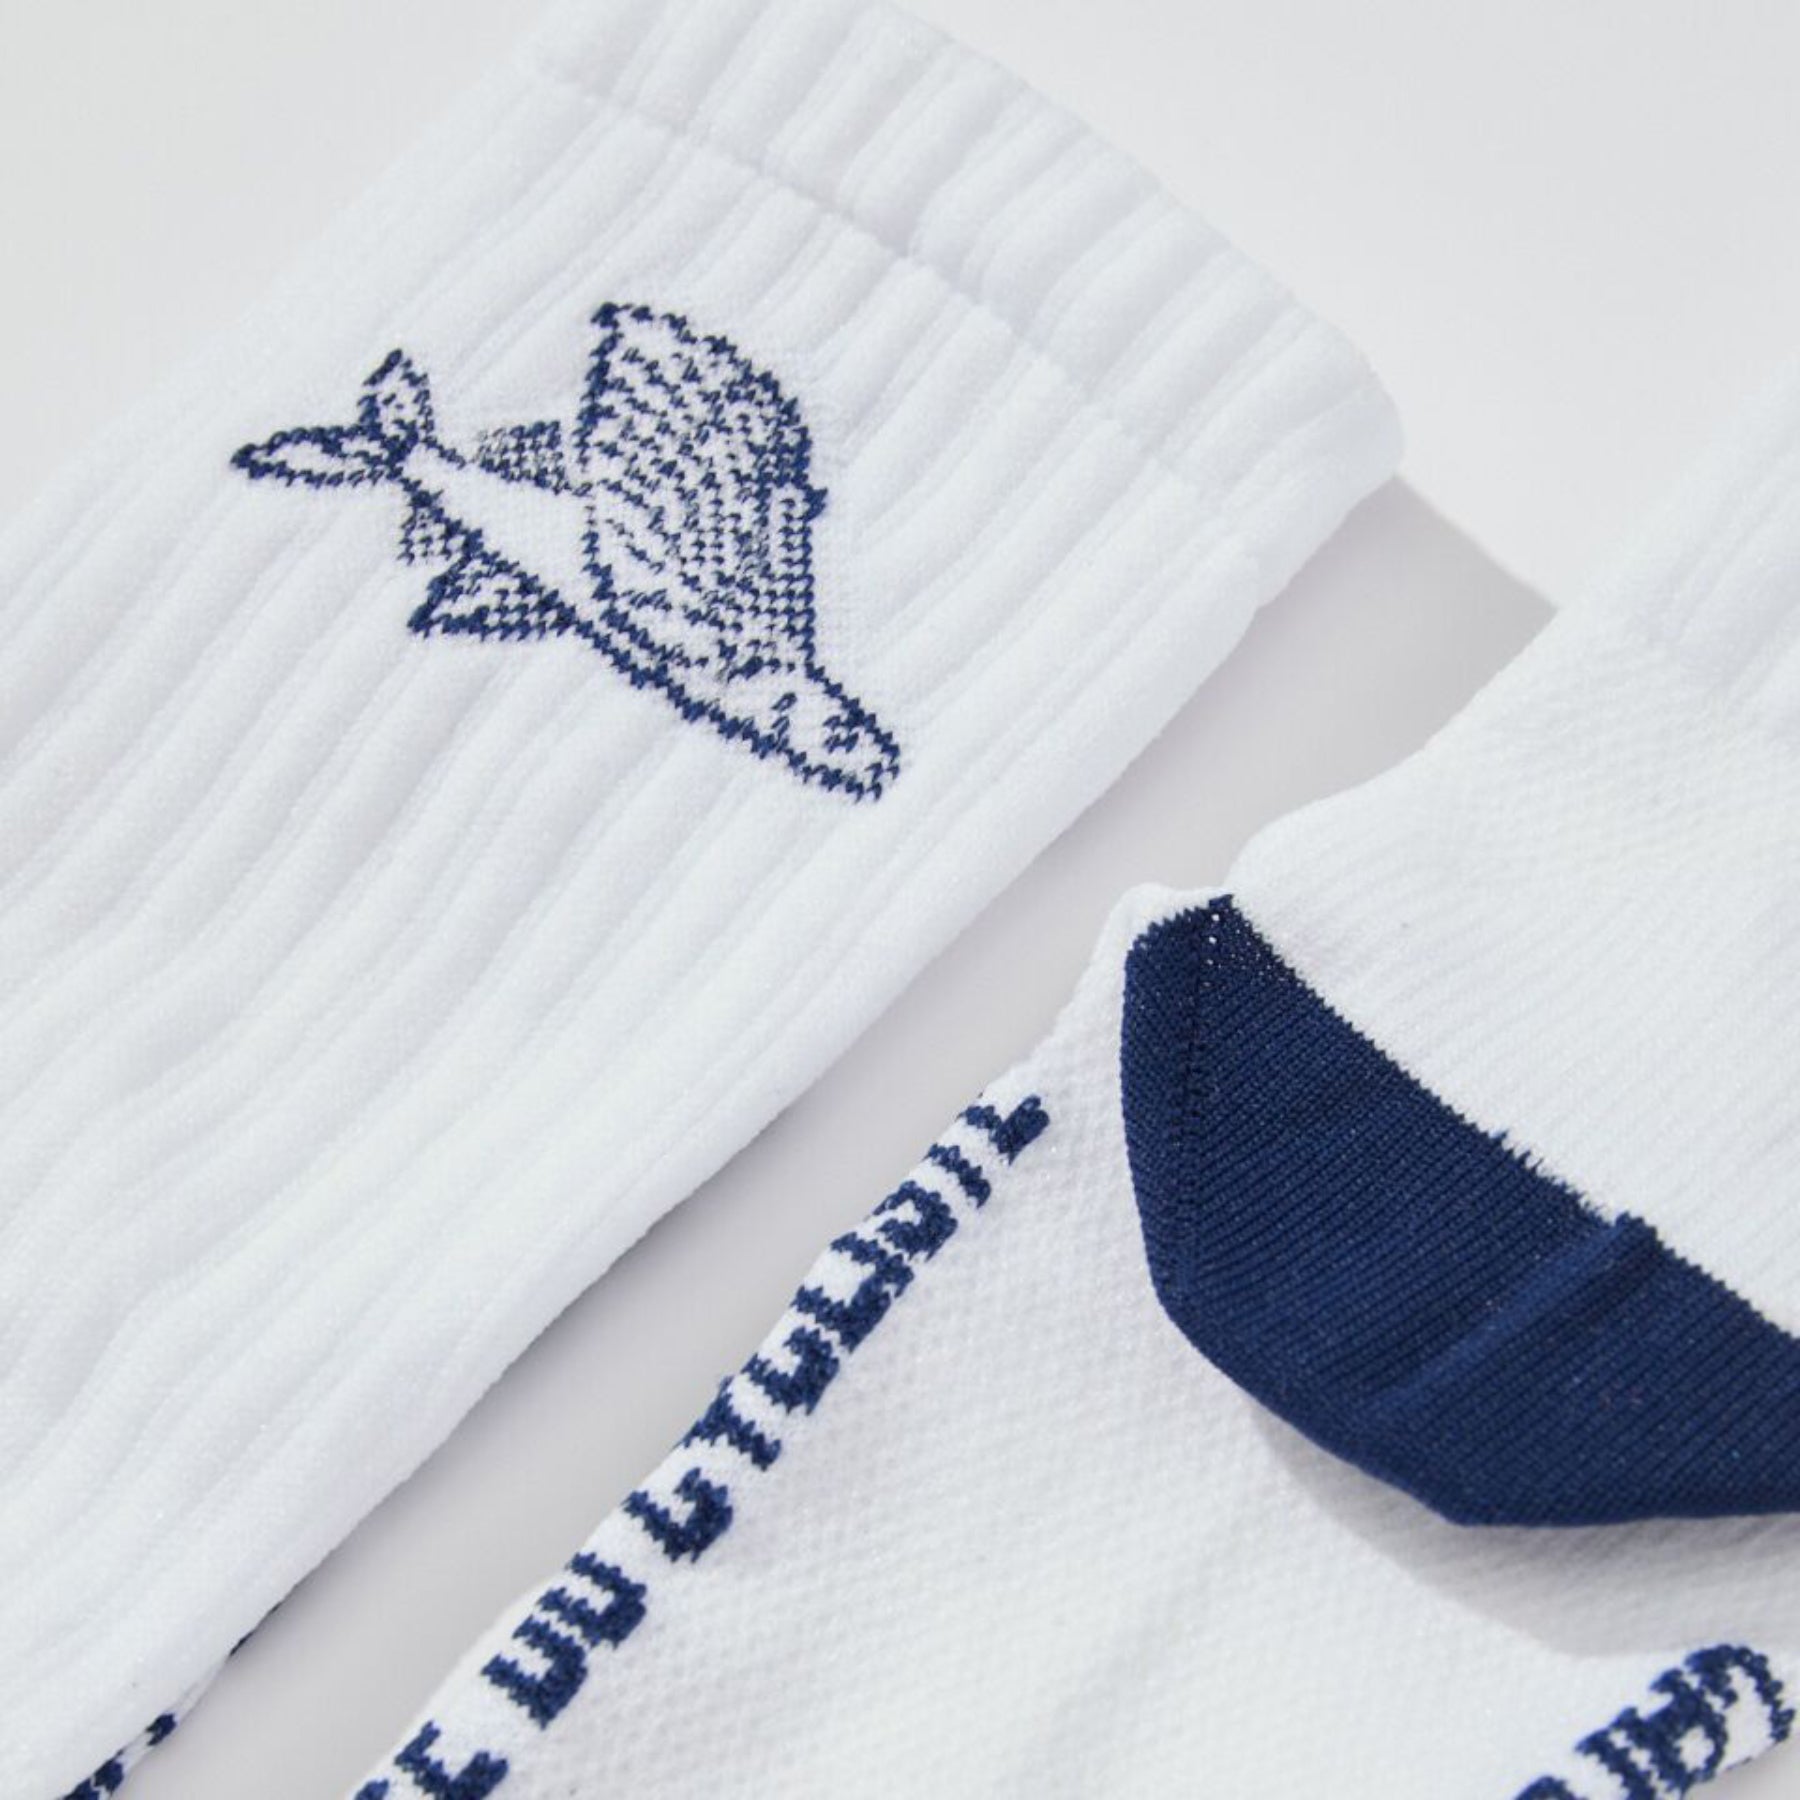 Gravel Socks - Flying Fish White